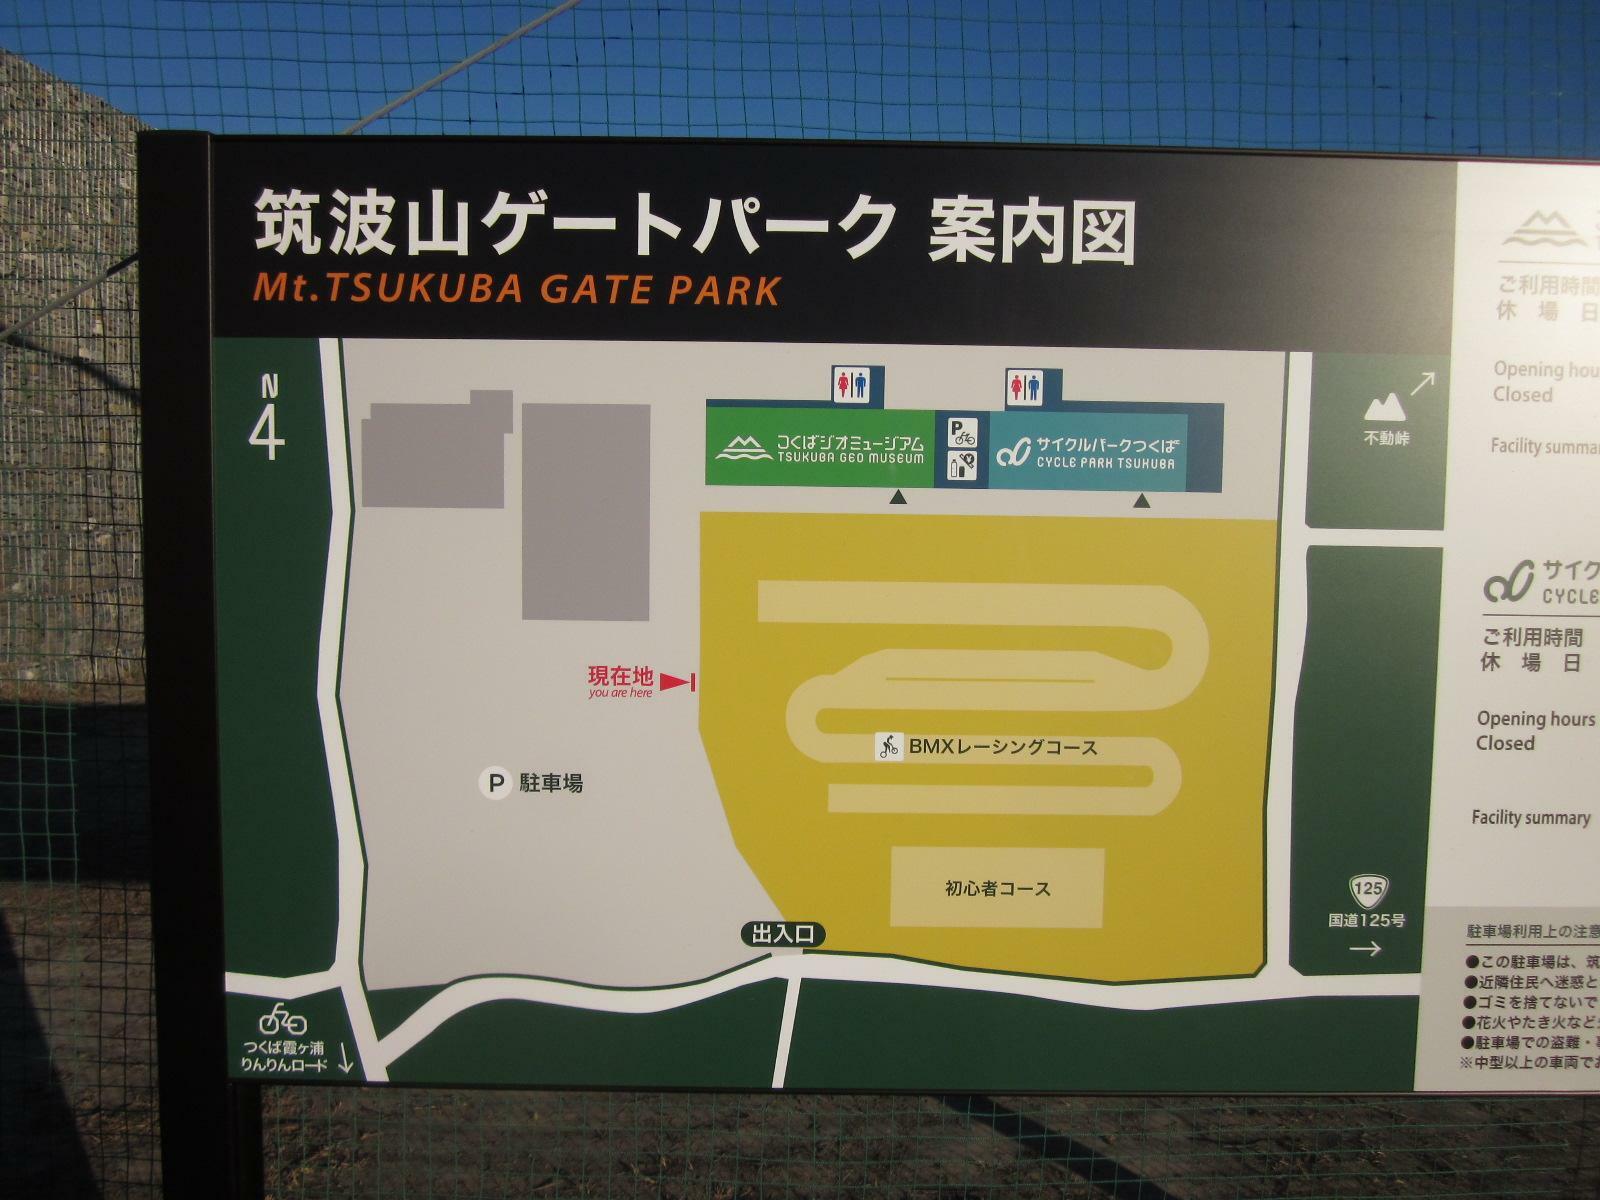 筑波山ゲートパークにはBMXレーシングコースもあります。